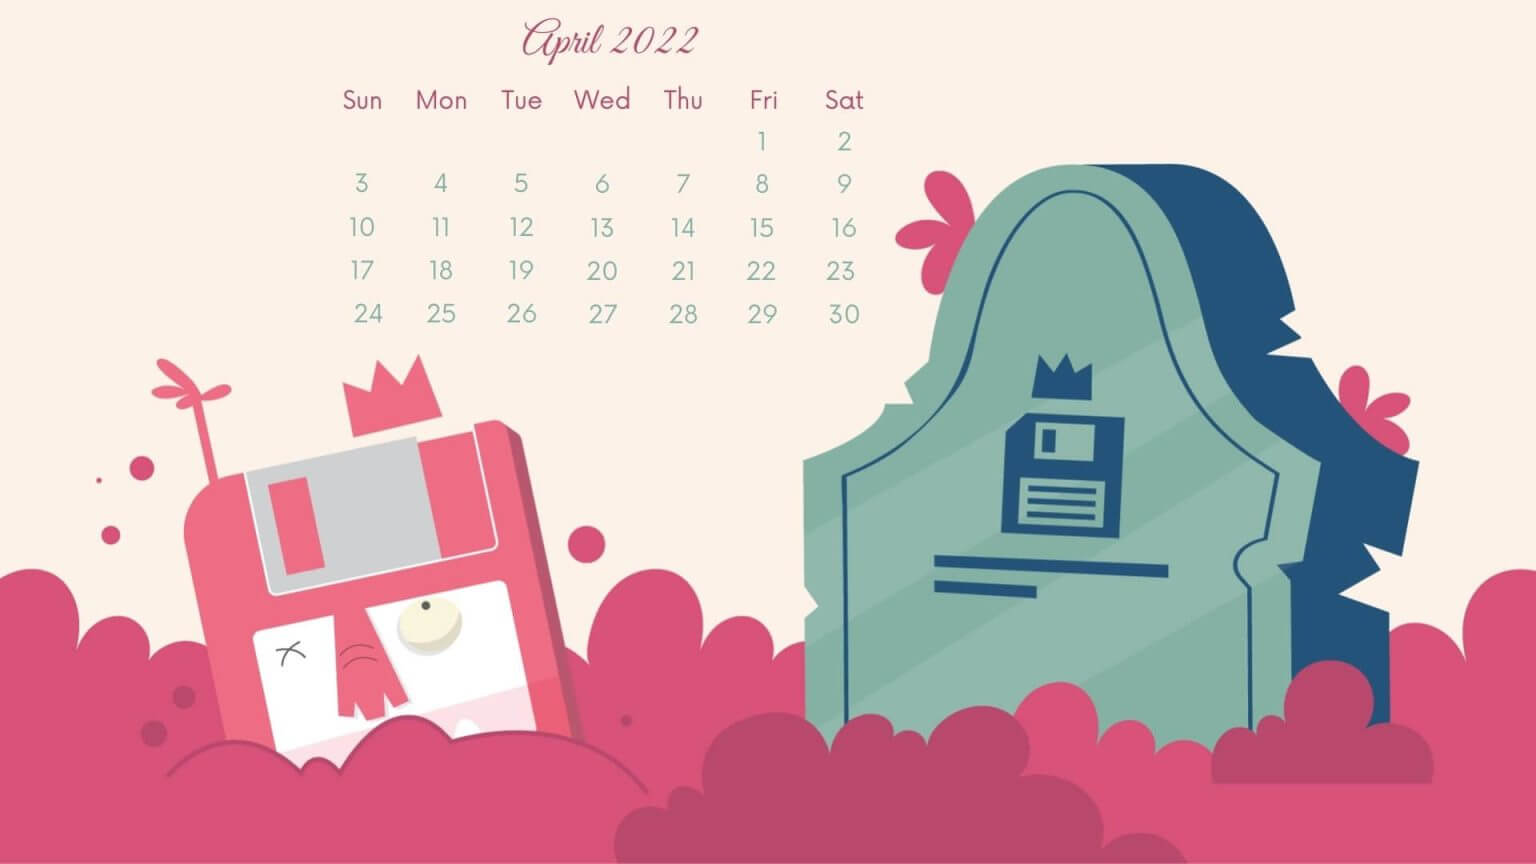 April 2022 HD calendar download